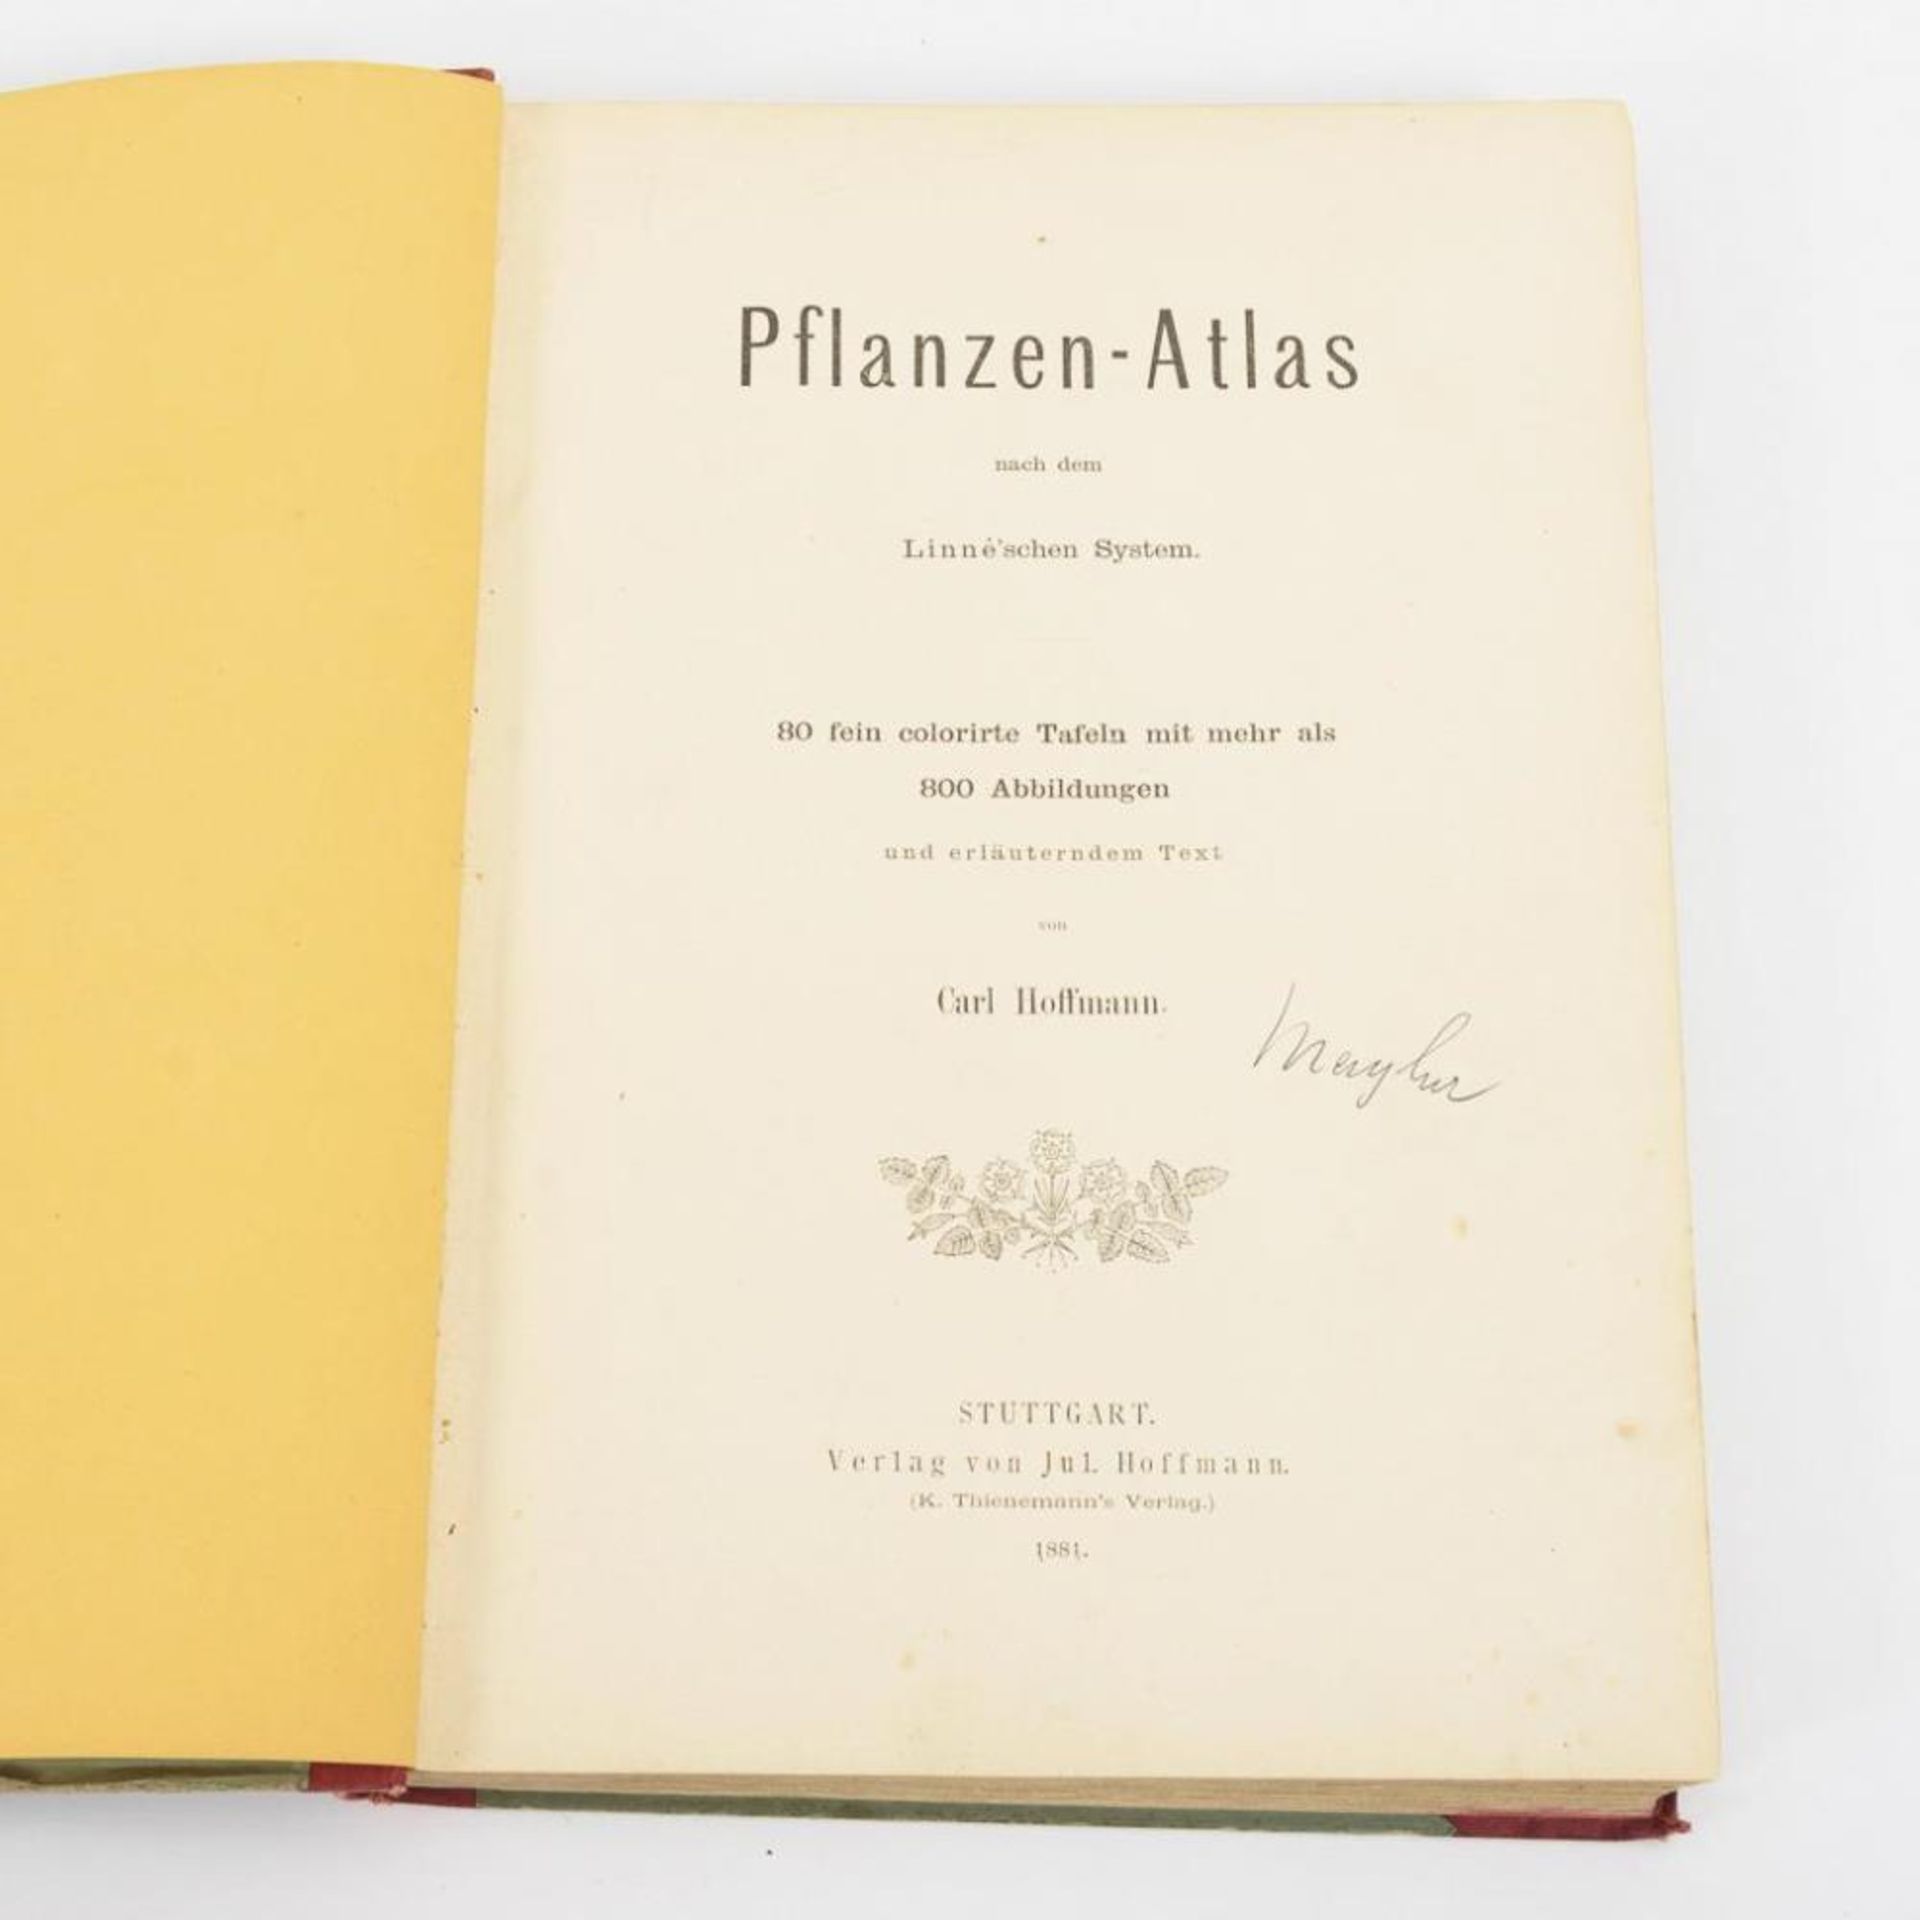 HOFFMANN, Carl. "Pflanzen-Atlas".